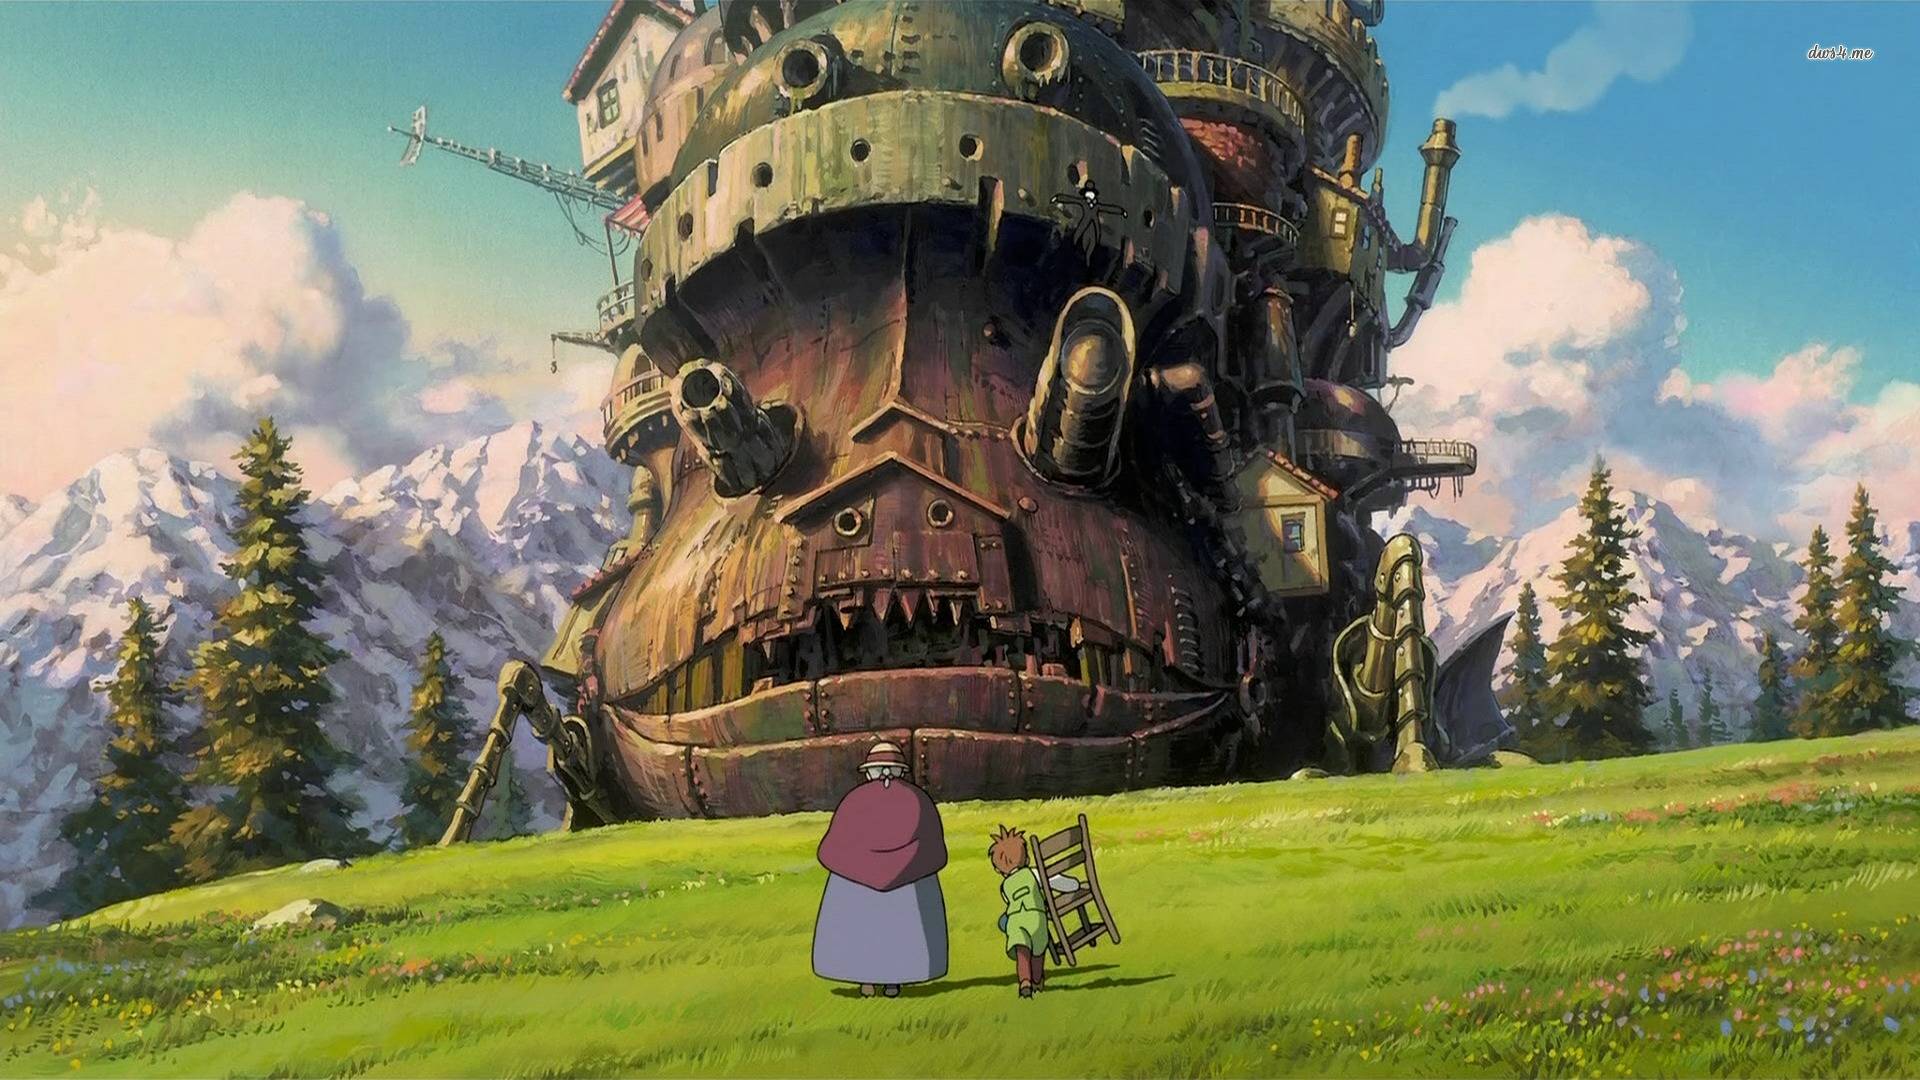 Studio Ghibli phát hành 400 ảnh FullHD cho 8 phim hoạt hình Vùng Đất Linh  Hồn Gió Nổi Ngọn Đồi Hoa   Studio ghibli background Studio ghibli art  Anime scenery